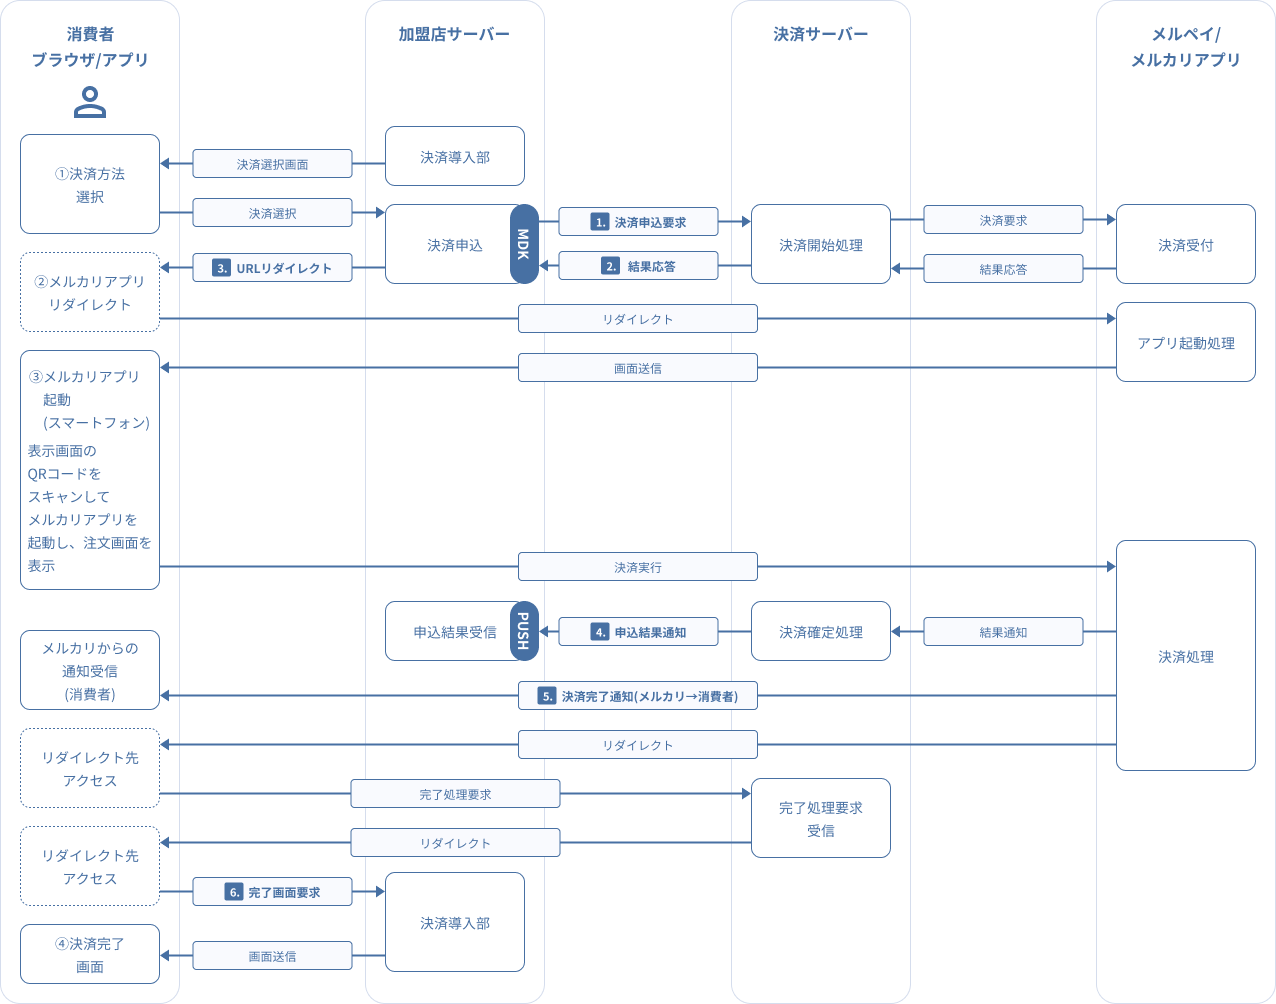 図 3-2 2 MDK利用時システム処理概要図（メルペイ：決済申込時の処理（PC＋スマートフォン））